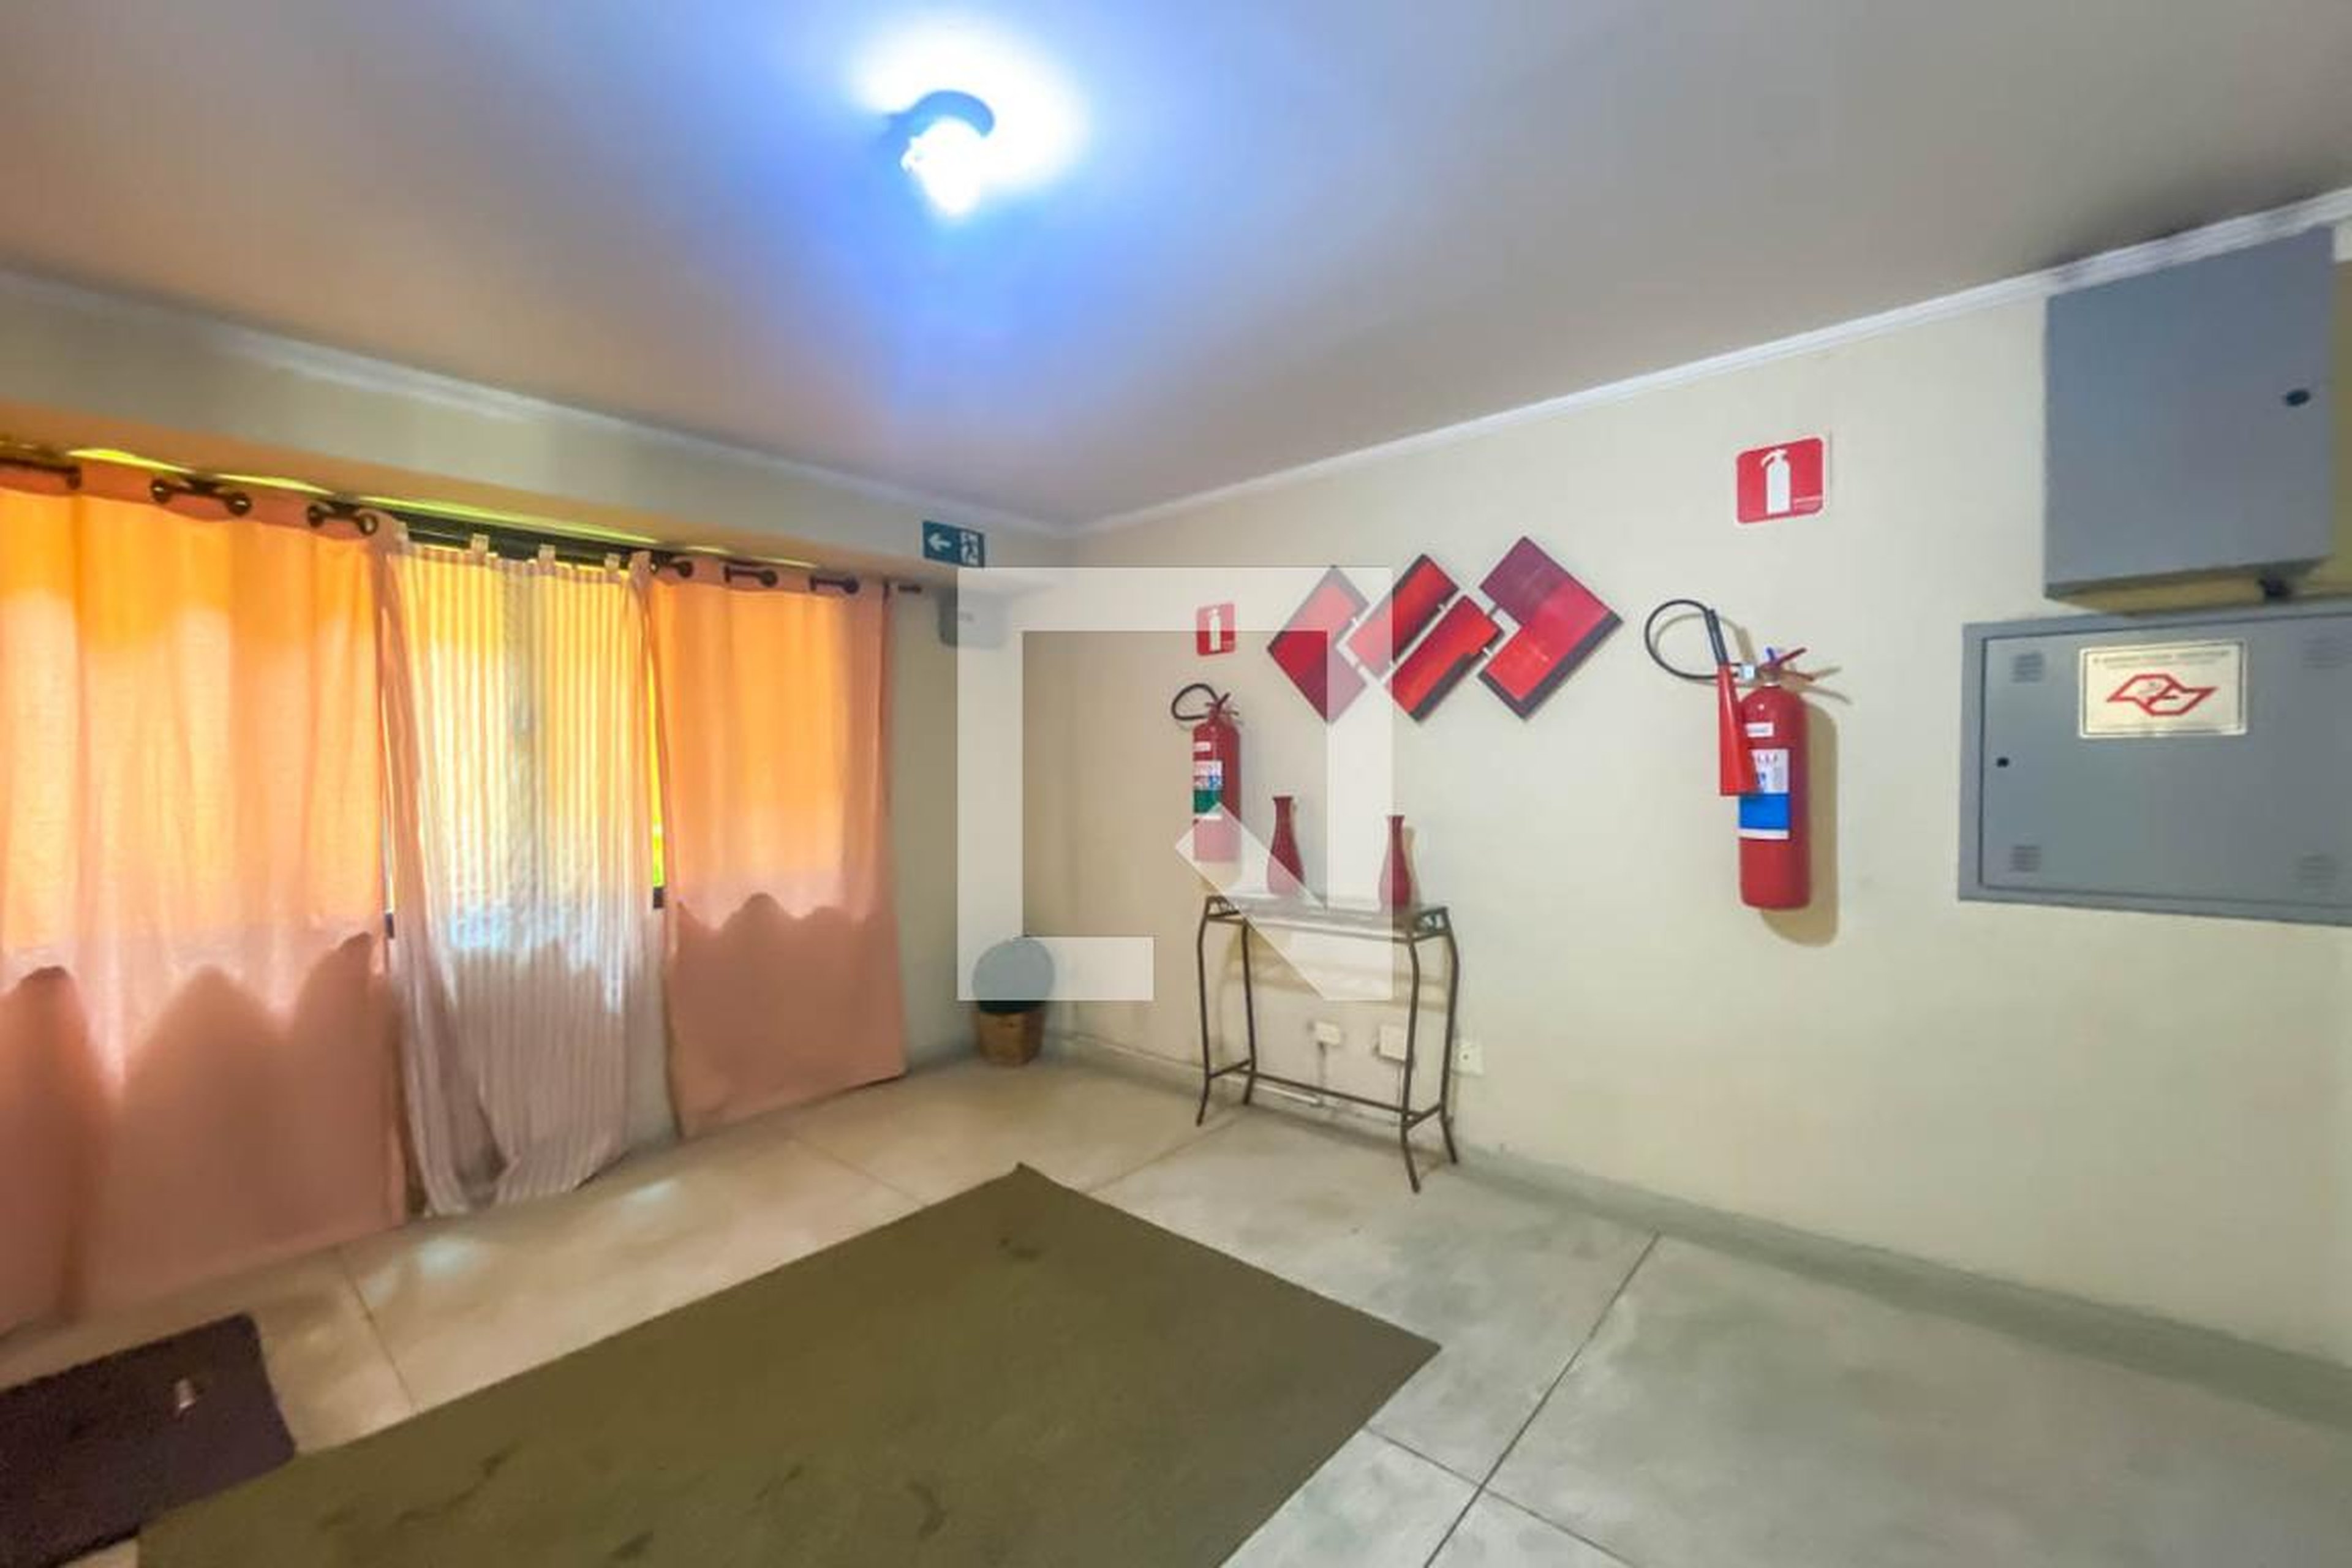 Hall de Entrada - Residencial Girassol